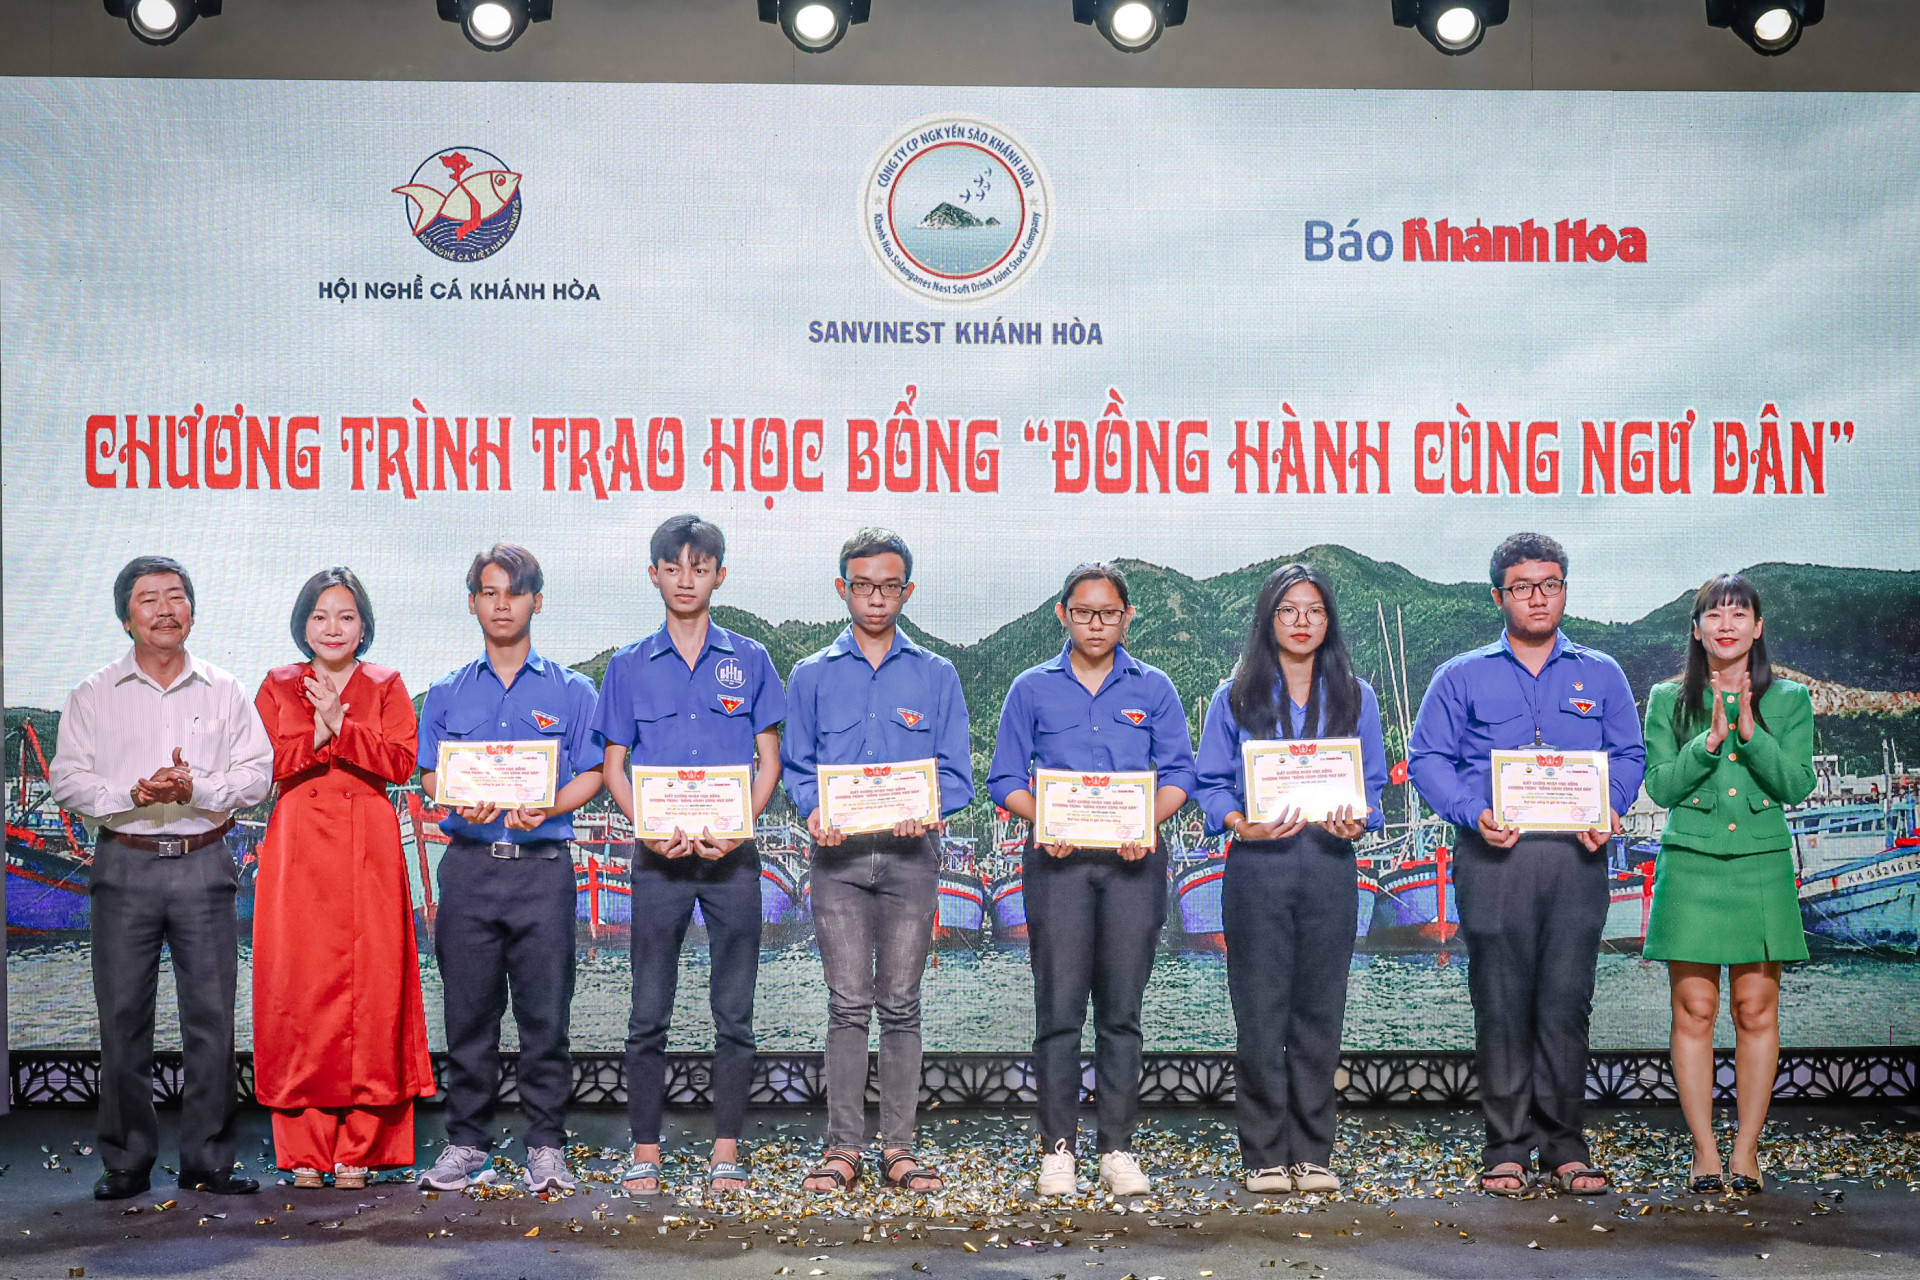 Lãnh đạo Báo Khánh Hòa, Sanvinest Khánh Hòa, Hội nghề cá tỉnh trao học bổng Đồng hành cùng ngư dân cho các sinh viên